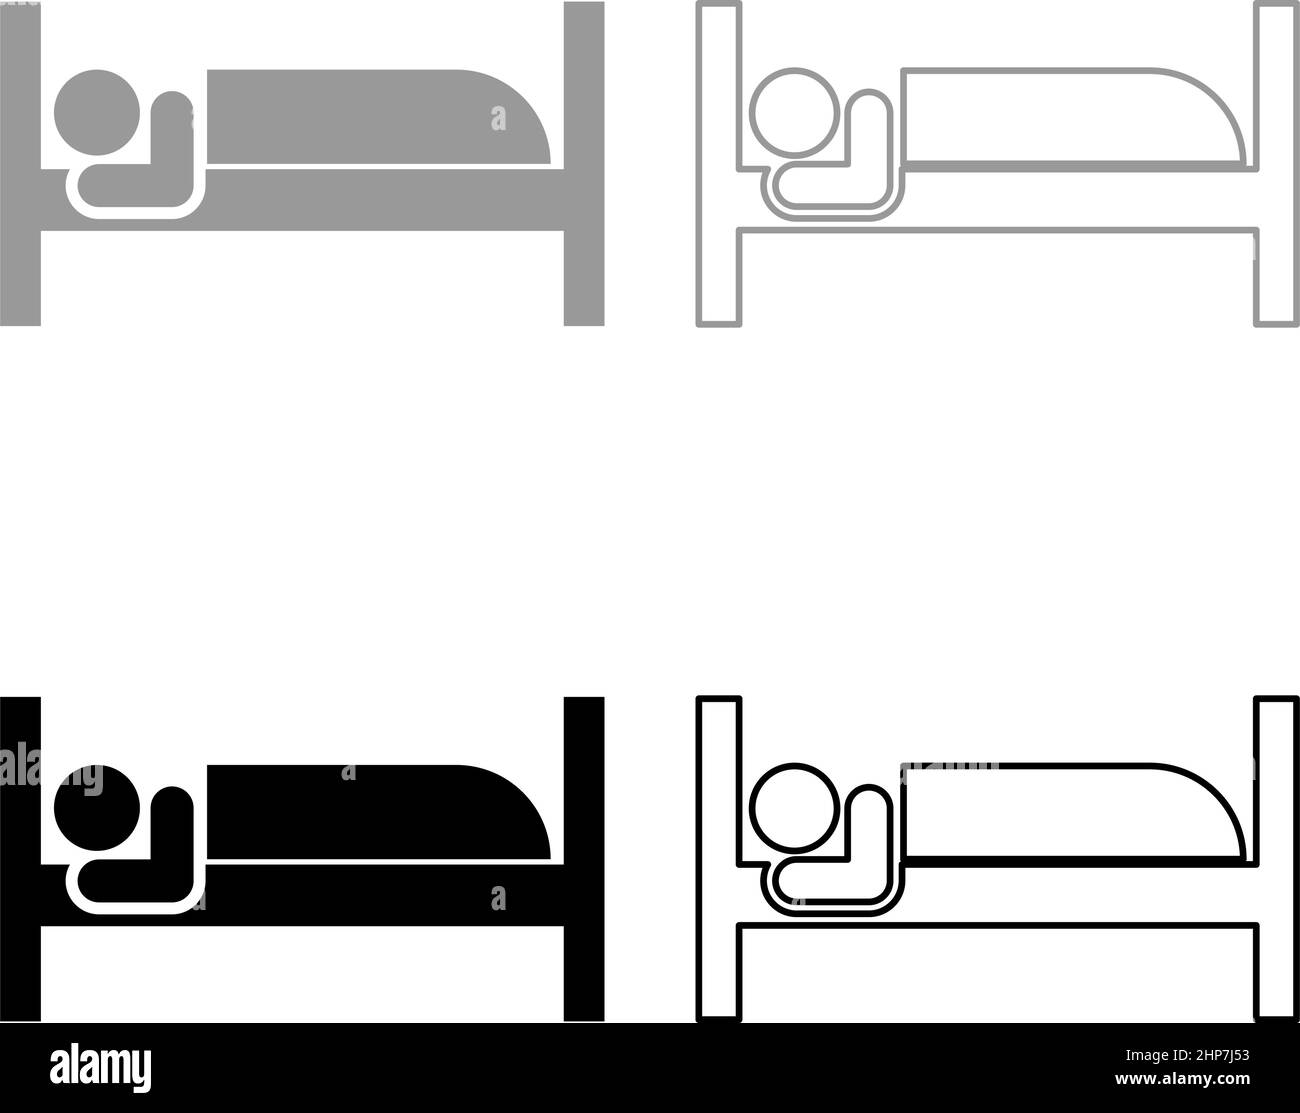 Mann liegt auf Bett schlafen Konzept Hotel Zeichen gesetzt Symbol grau schwarz Farbe Vektor Illustration Bild flach Stil solide füllen Kontur Kontur Linie dünn Stock Vektor